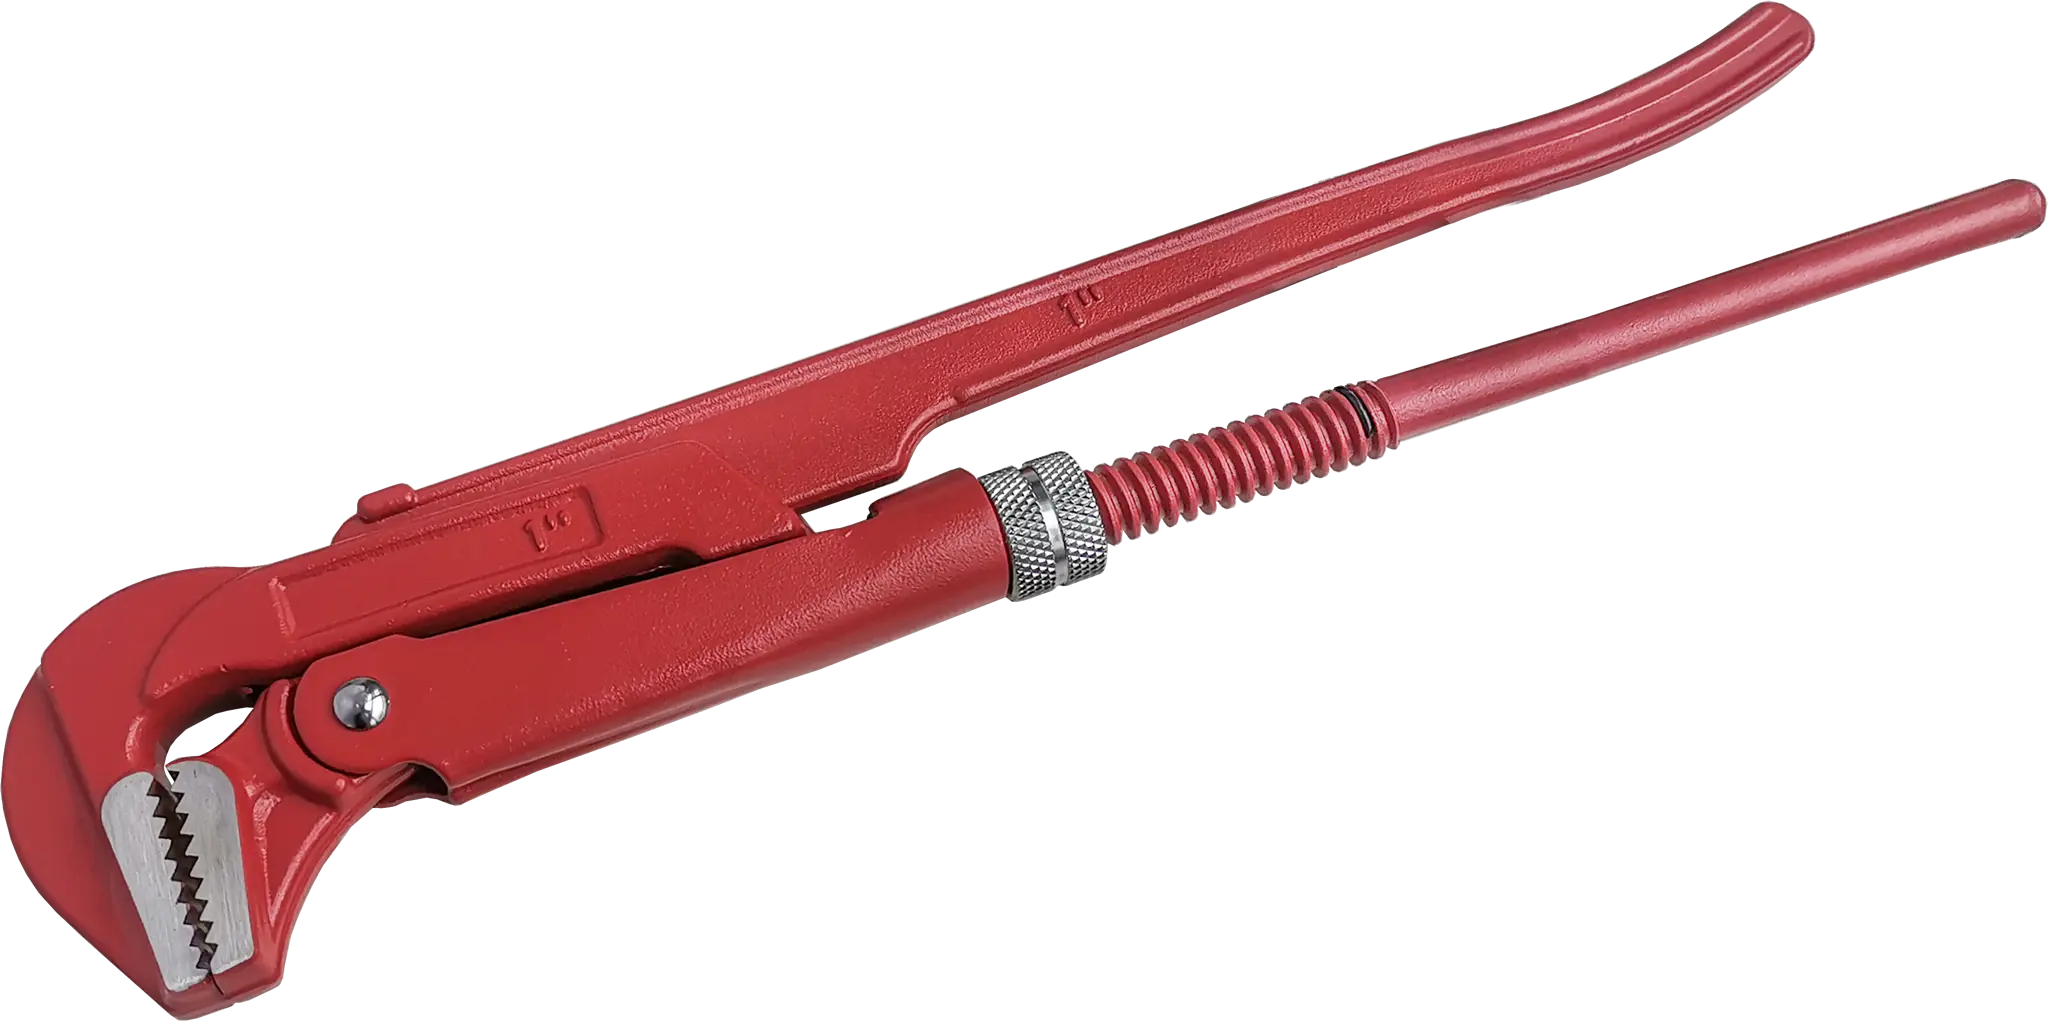 Ключ трубный газовый рычажный КТР-1 захват 25 мм, длина 320 мм жидкий ключ масляный для отвинчивания приржавевших деталей avs avk 112 335 мл жидкость